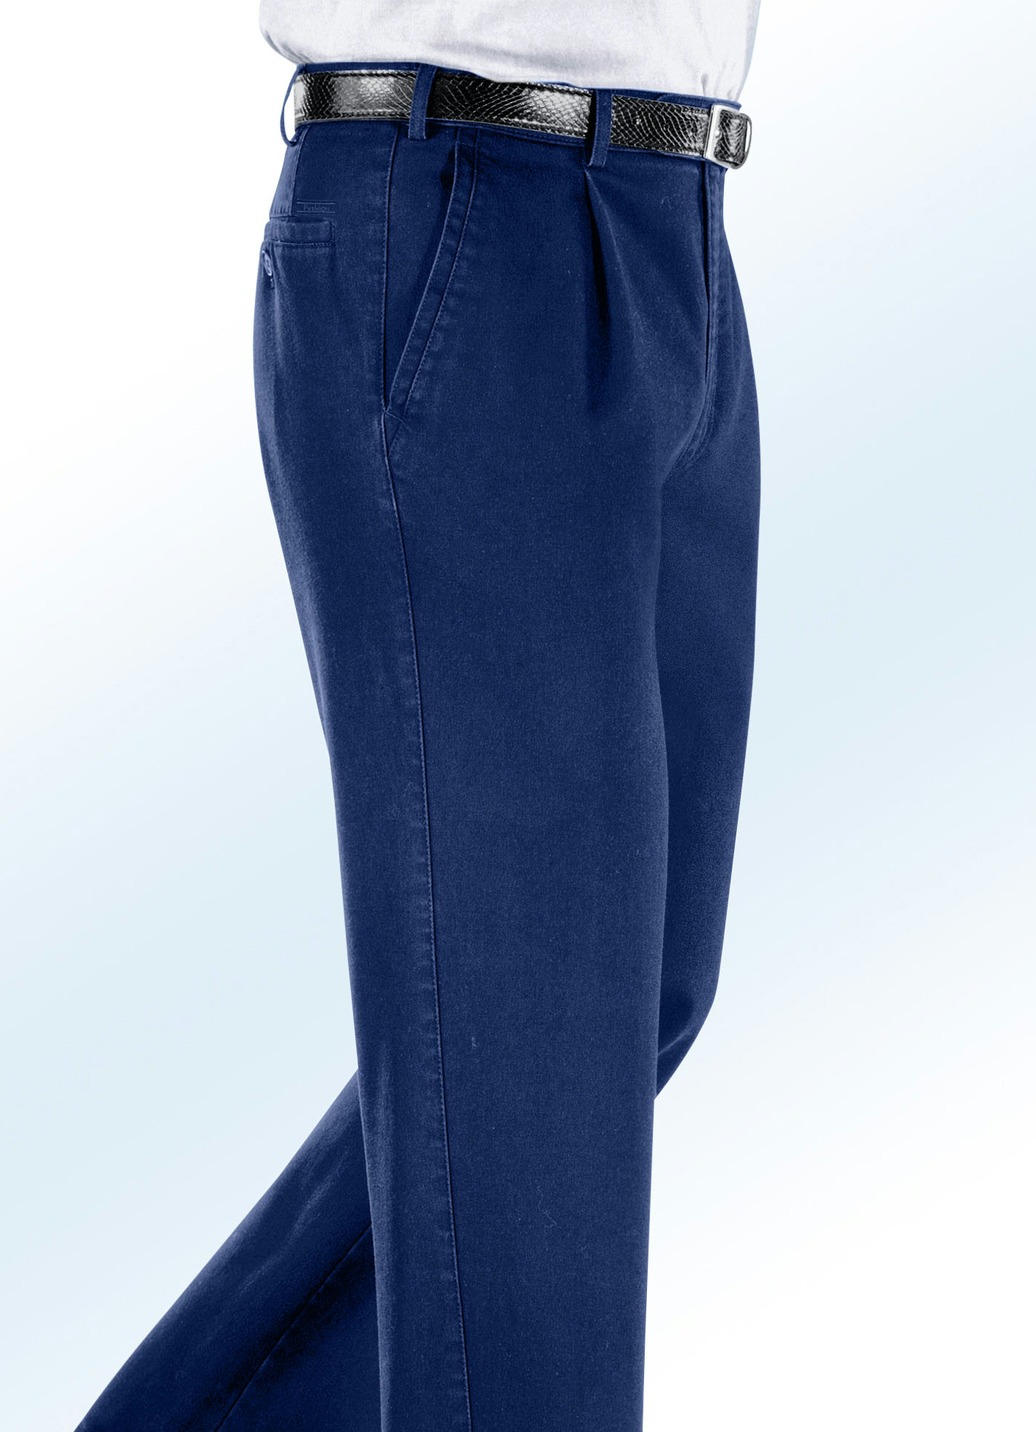 Bügelfreie Jeans mit Zieretikett in 3 Farben, Jeansblau, Größe 26 von BADER